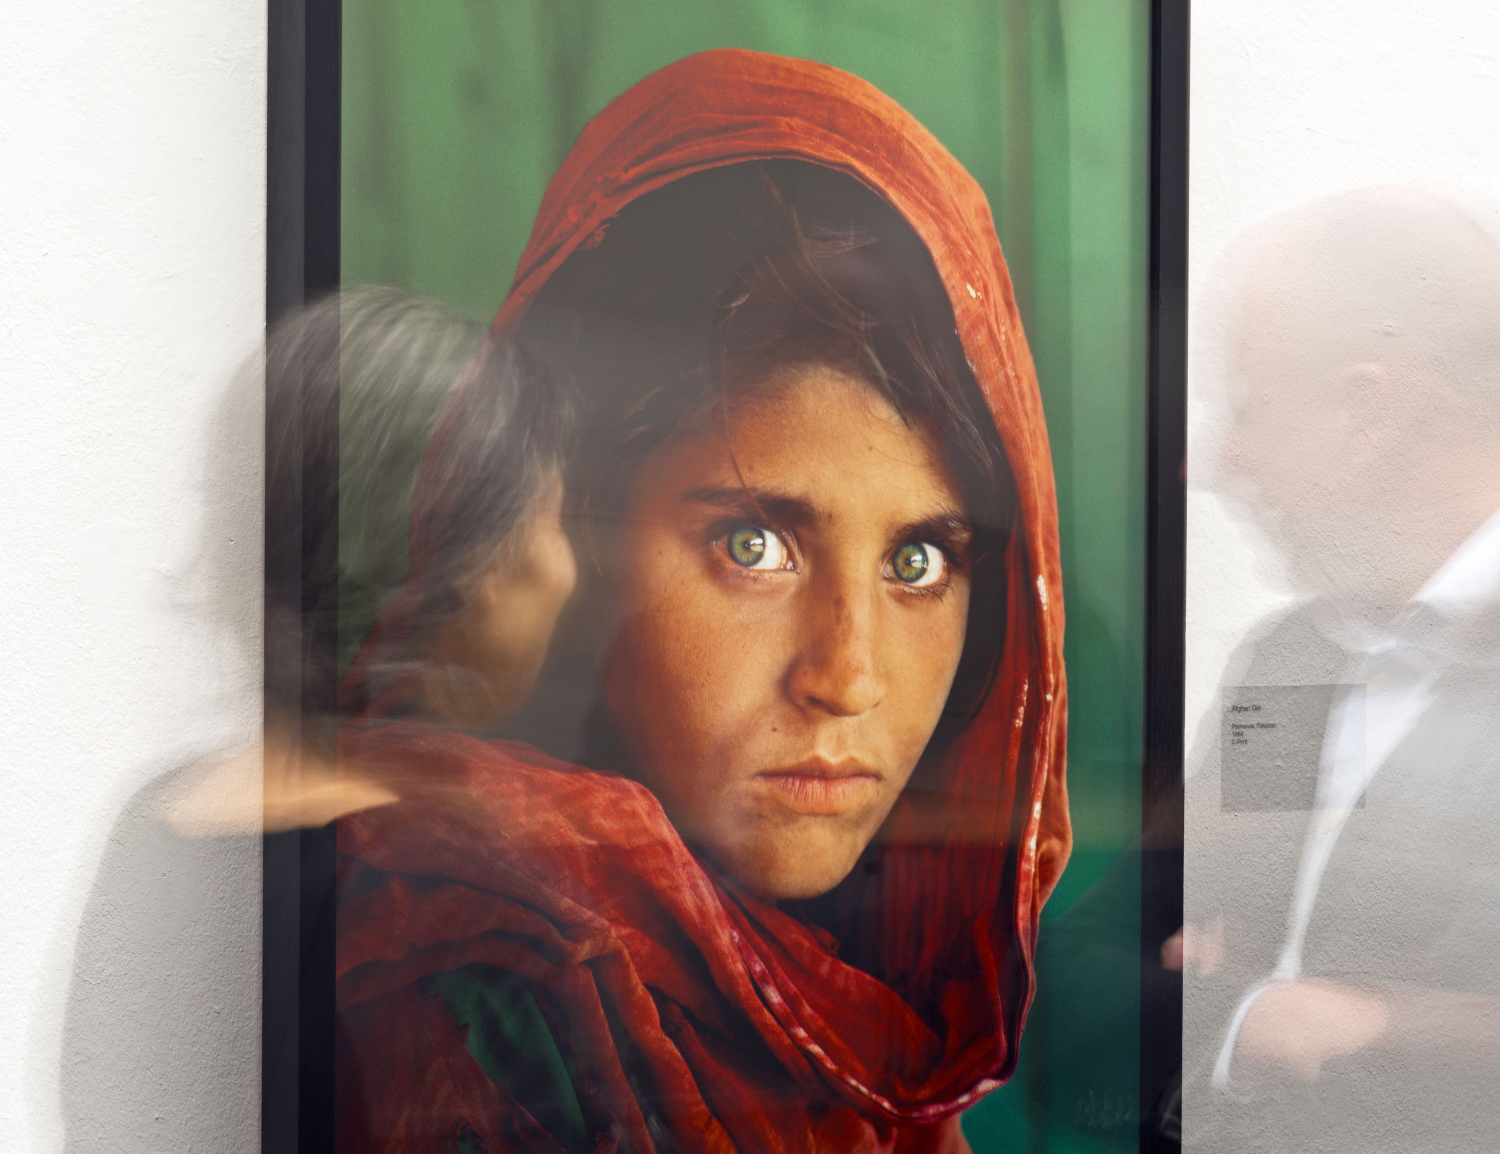 Escándalo en el fotoperiodismo: Steve McCurry, el referente que usaba Photoshop